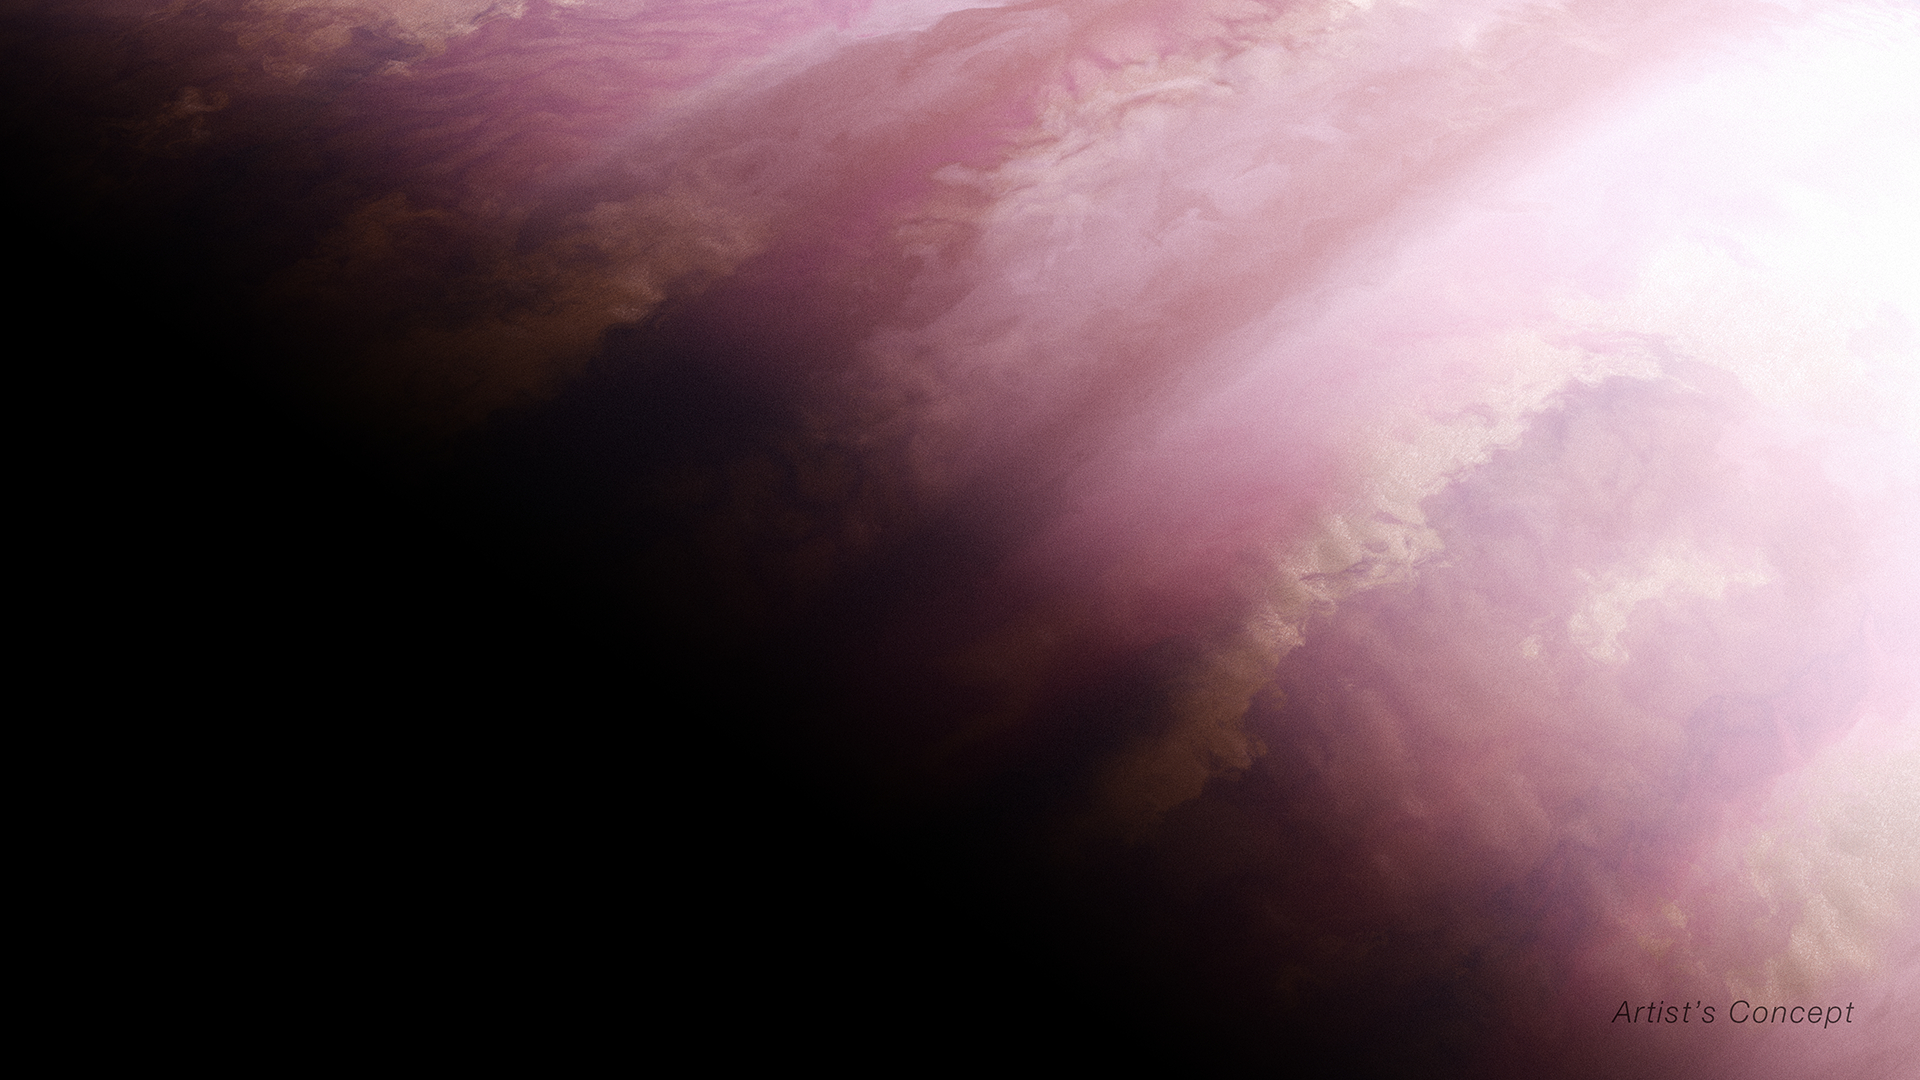 El concepto de este artista muestra cómo podría verse el exoplaneta WASP-39 b basado en observaciones de tránsito indirecto del JWST y otros telescopios espaciales y terrestres. Los datos recogidos por su NIRSpec (Espectrógrafo de Infrarrojo Cercano) muestran variaciones entre la atmósfera matutina y vespertina del planeta.